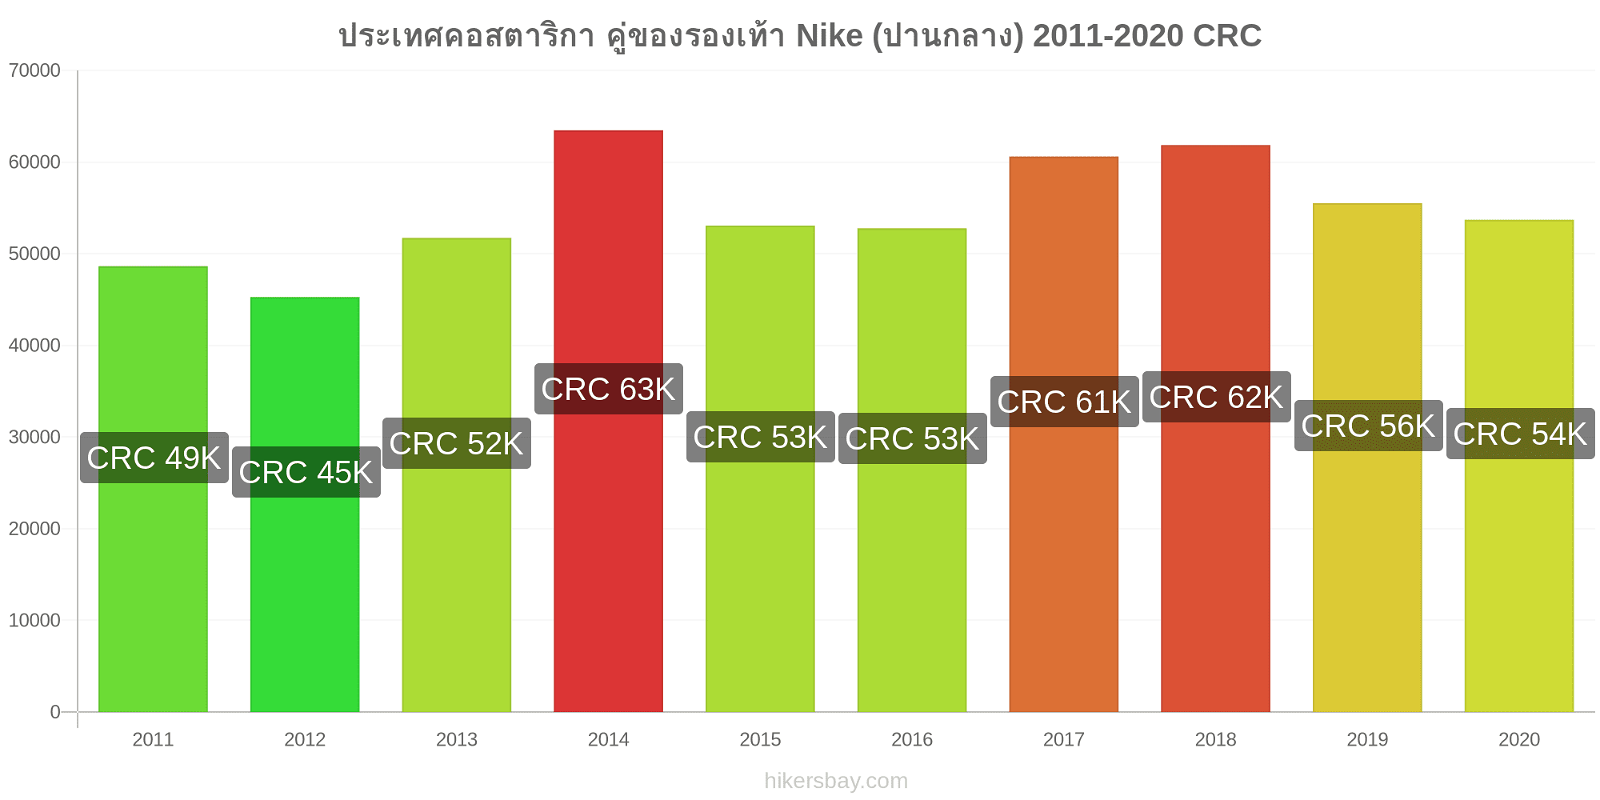 ประเทศคอสตาริกา การเปลี่ยนแปลงราคา คู่ของรองเท้า Nike (ปานกลาง) hikersbay.com